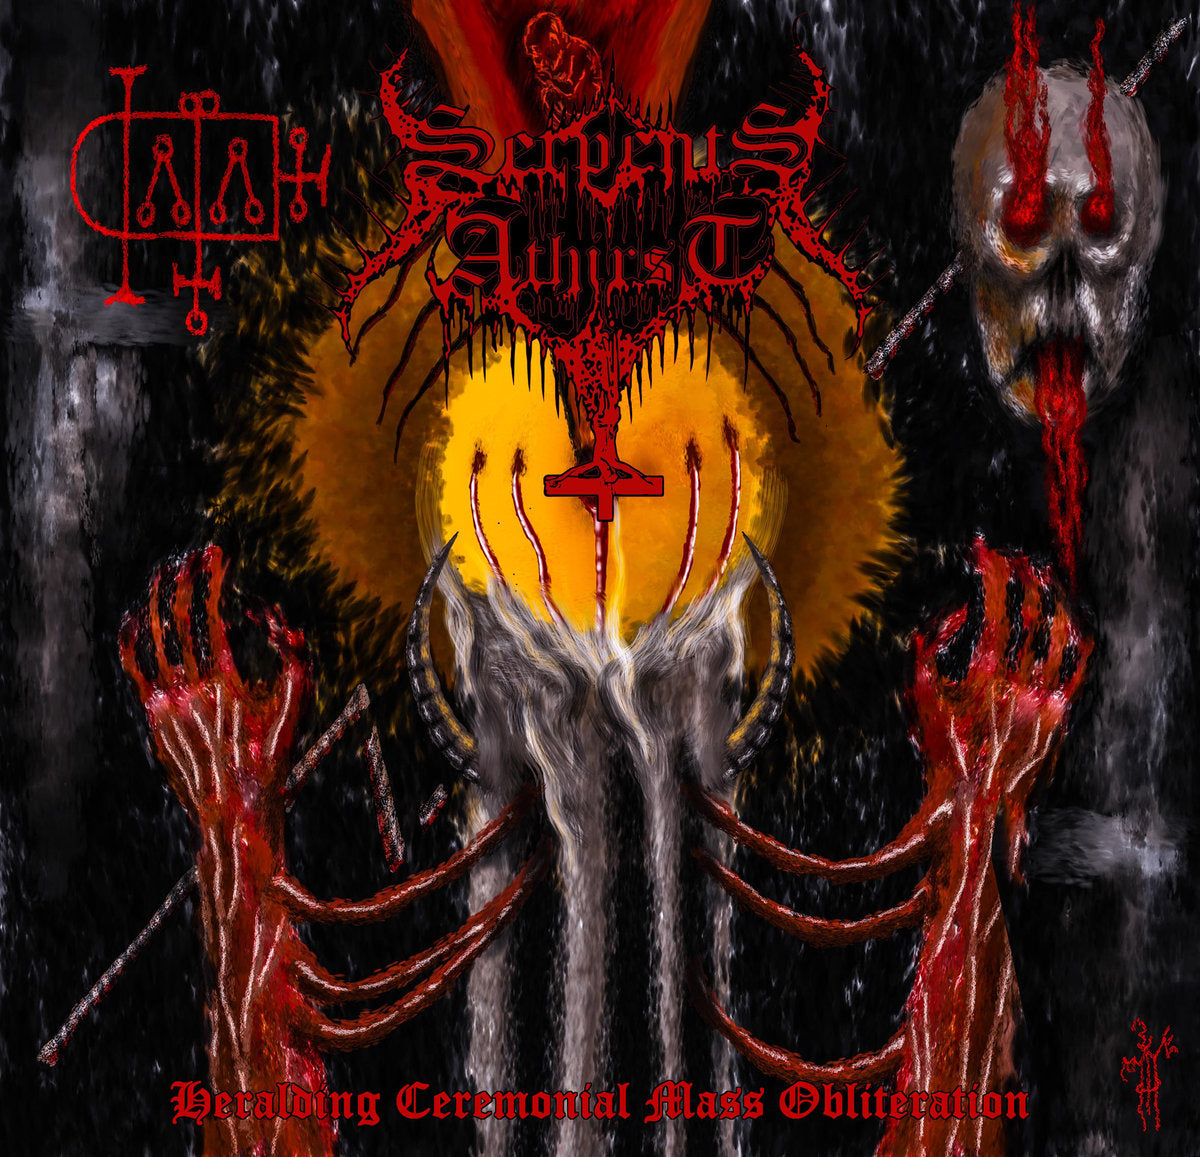 Serpents Athirst - Heralding Ceremonial Mass Obliteration LP (red vinyl)